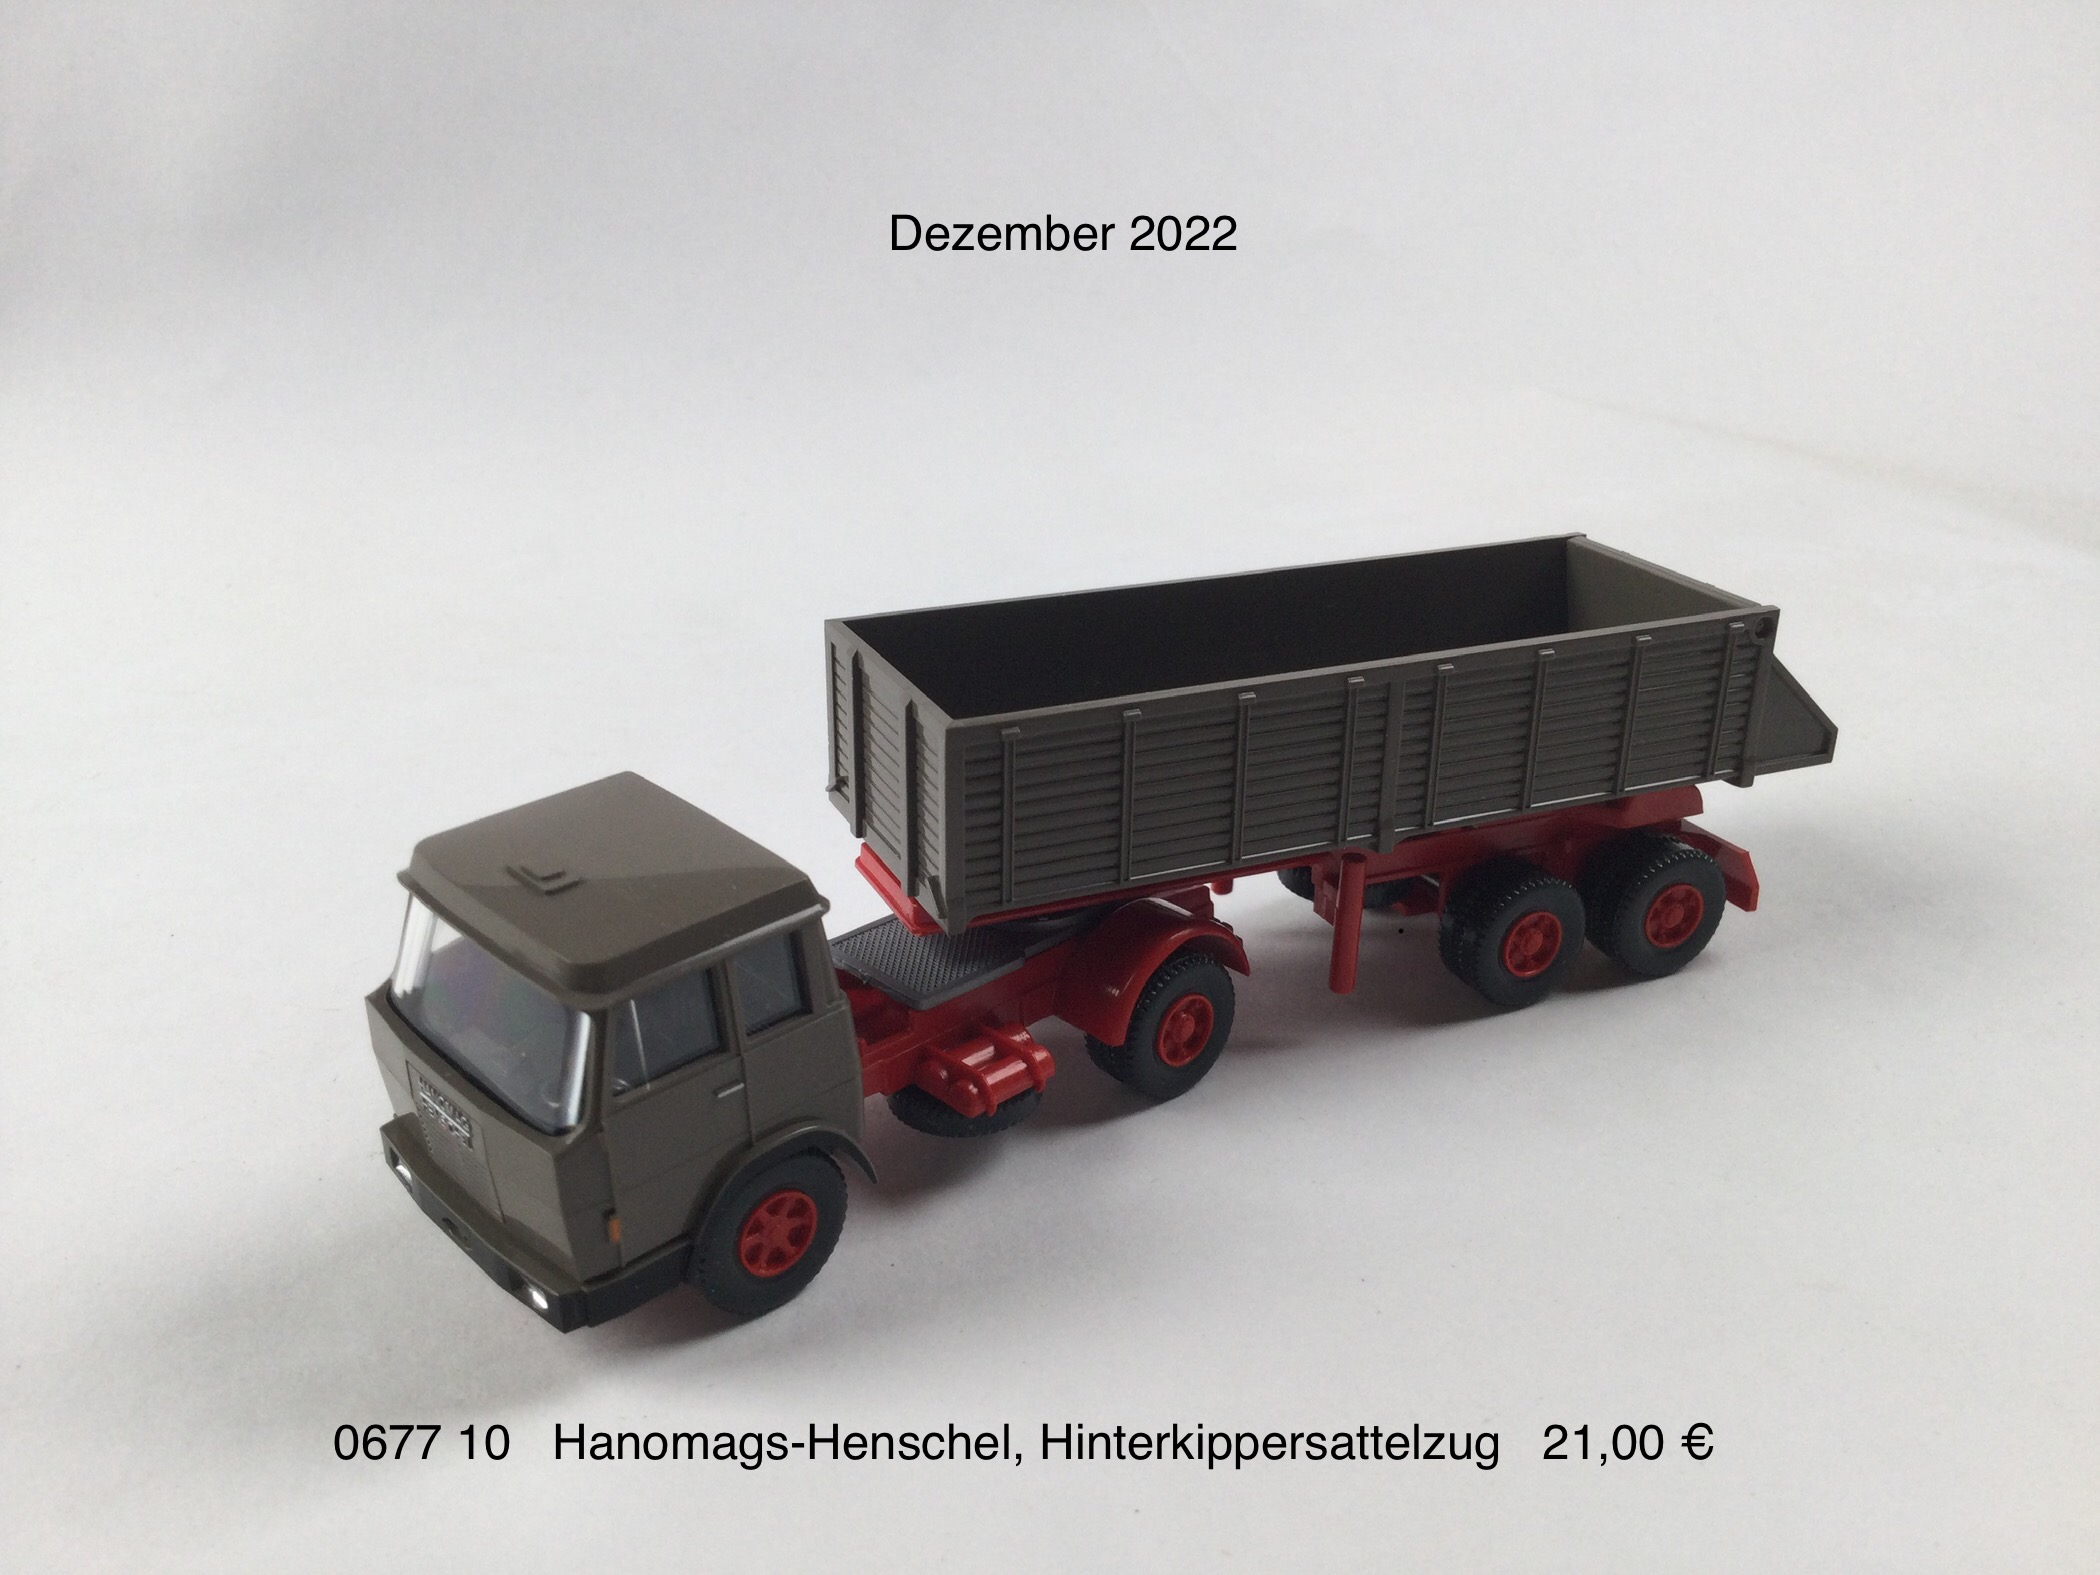 Hanomags-Henschel Hinterkippersattelzug